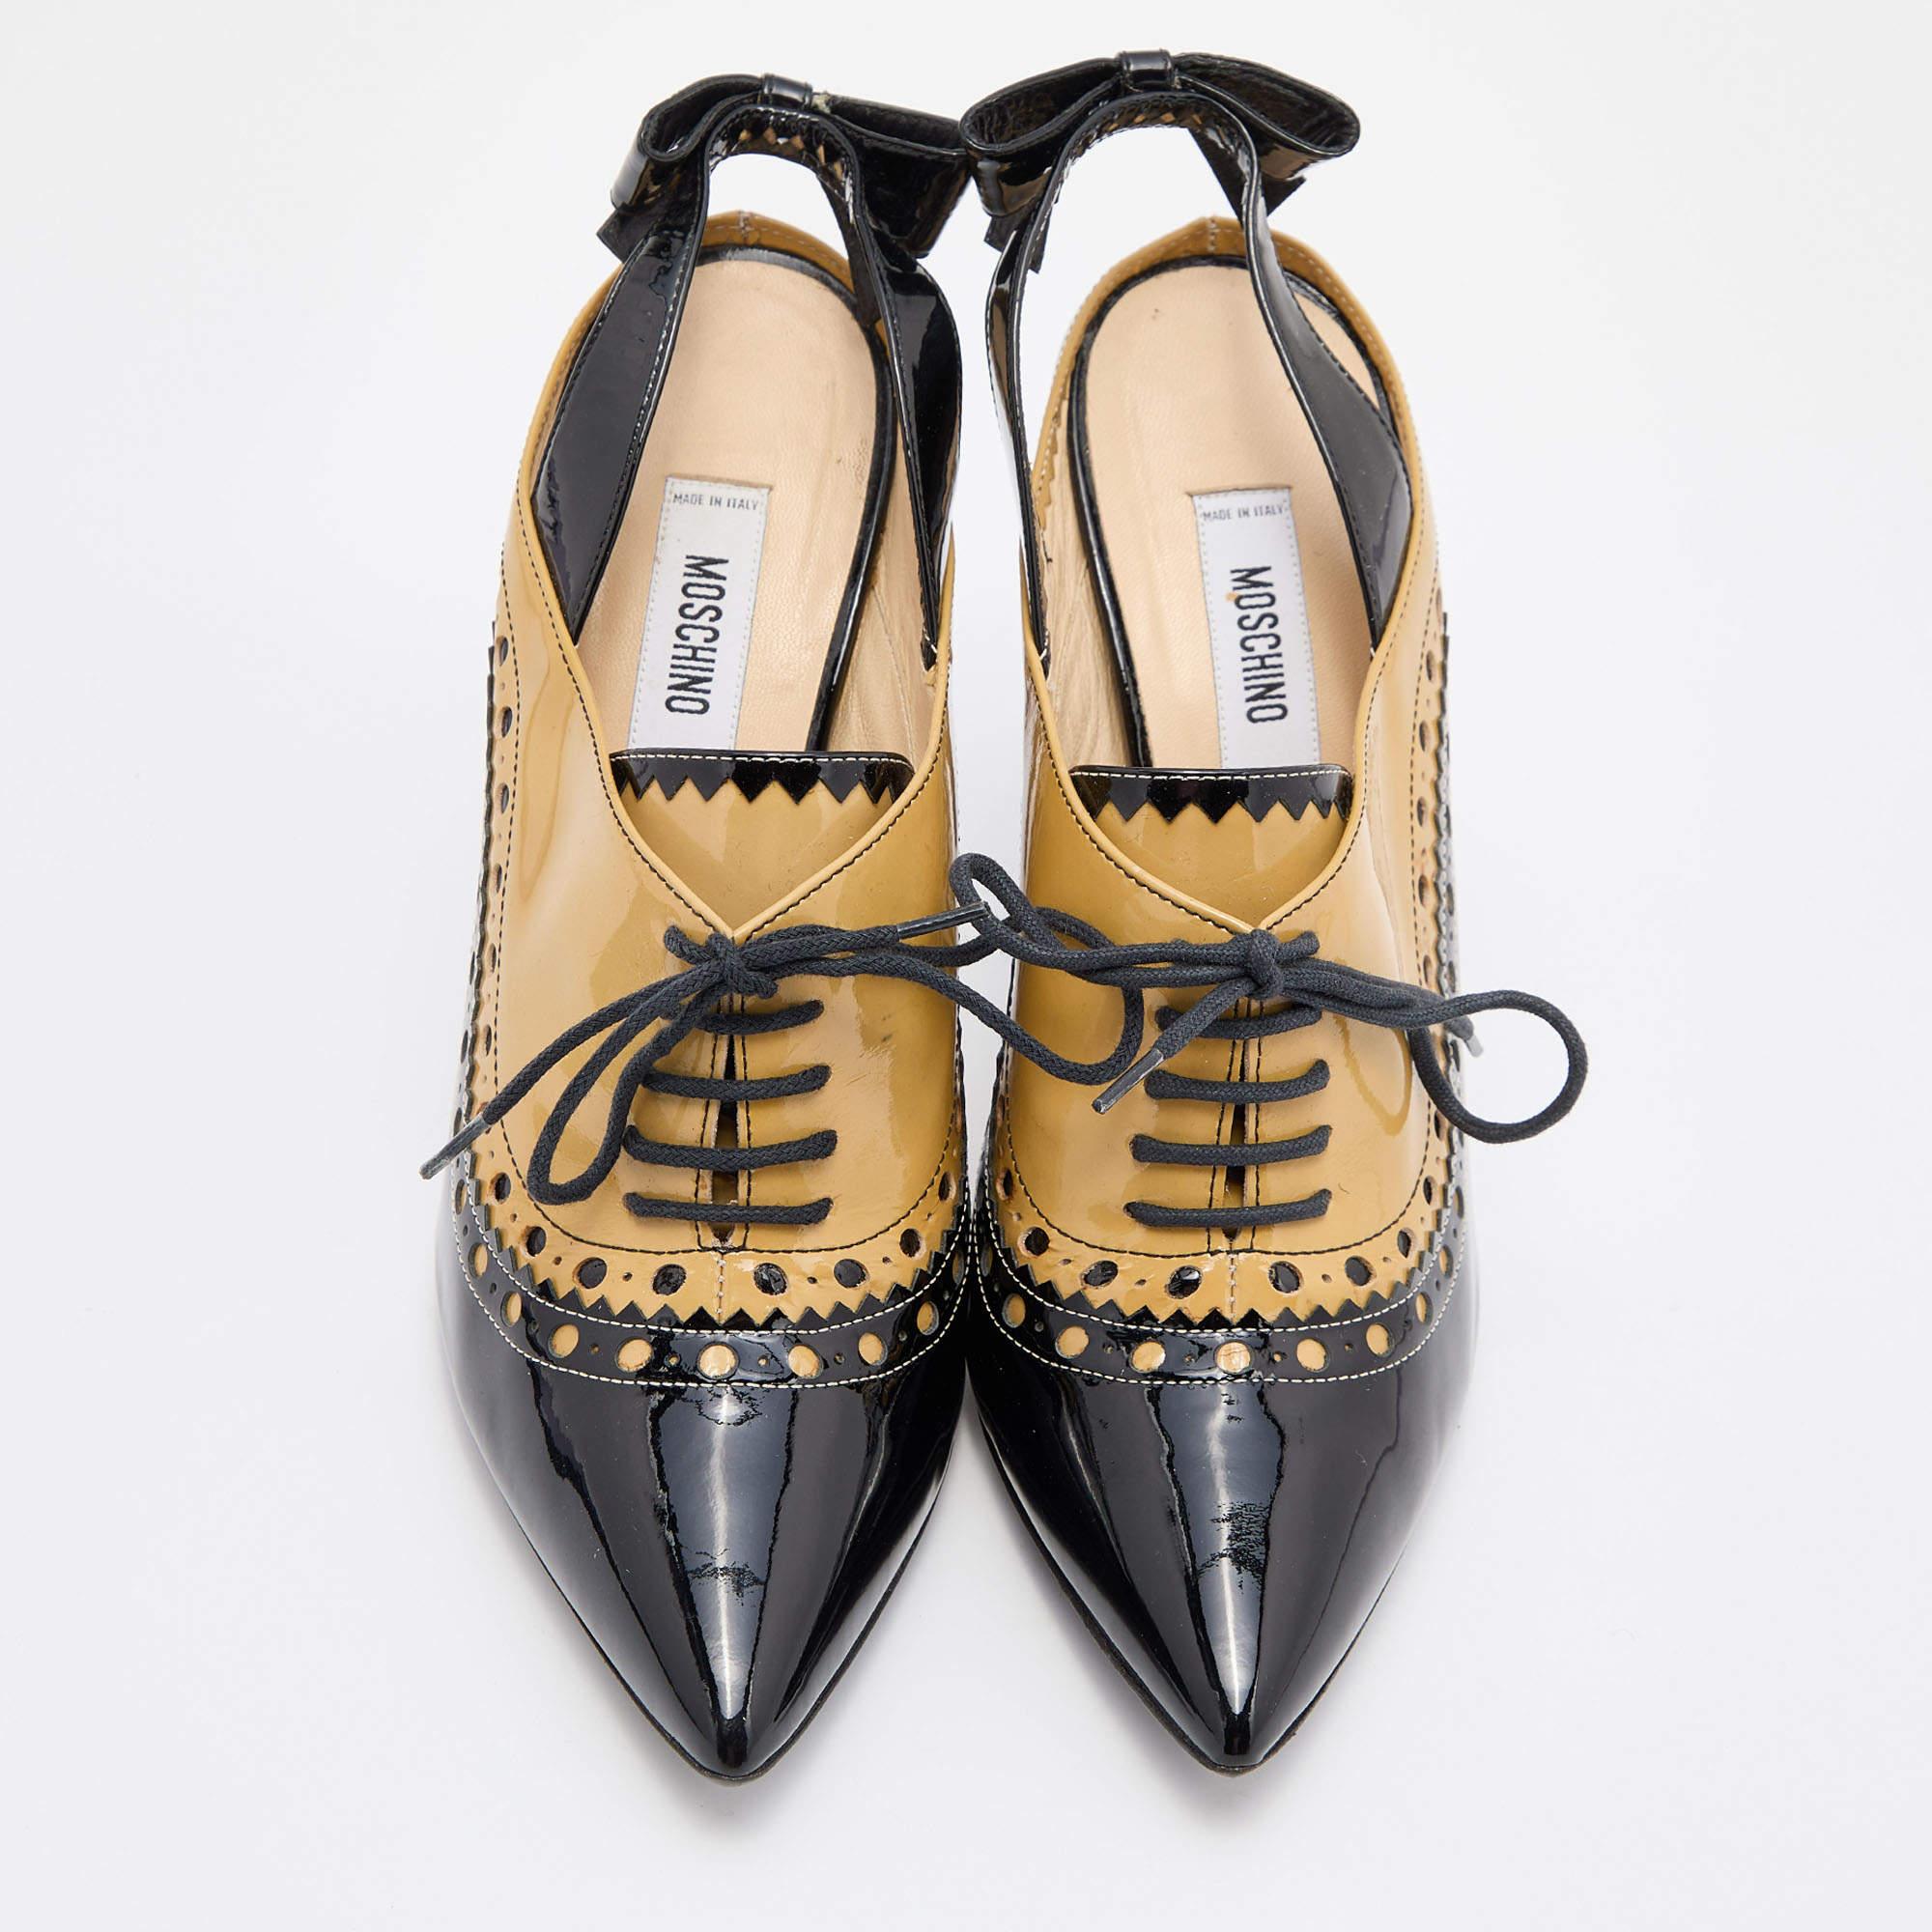 Ces chaussures de créateur intemporelles de Moschino sont conçues pour durer saison après saison. Ils ont un ajustement confortable et une finition de haute qualité.

